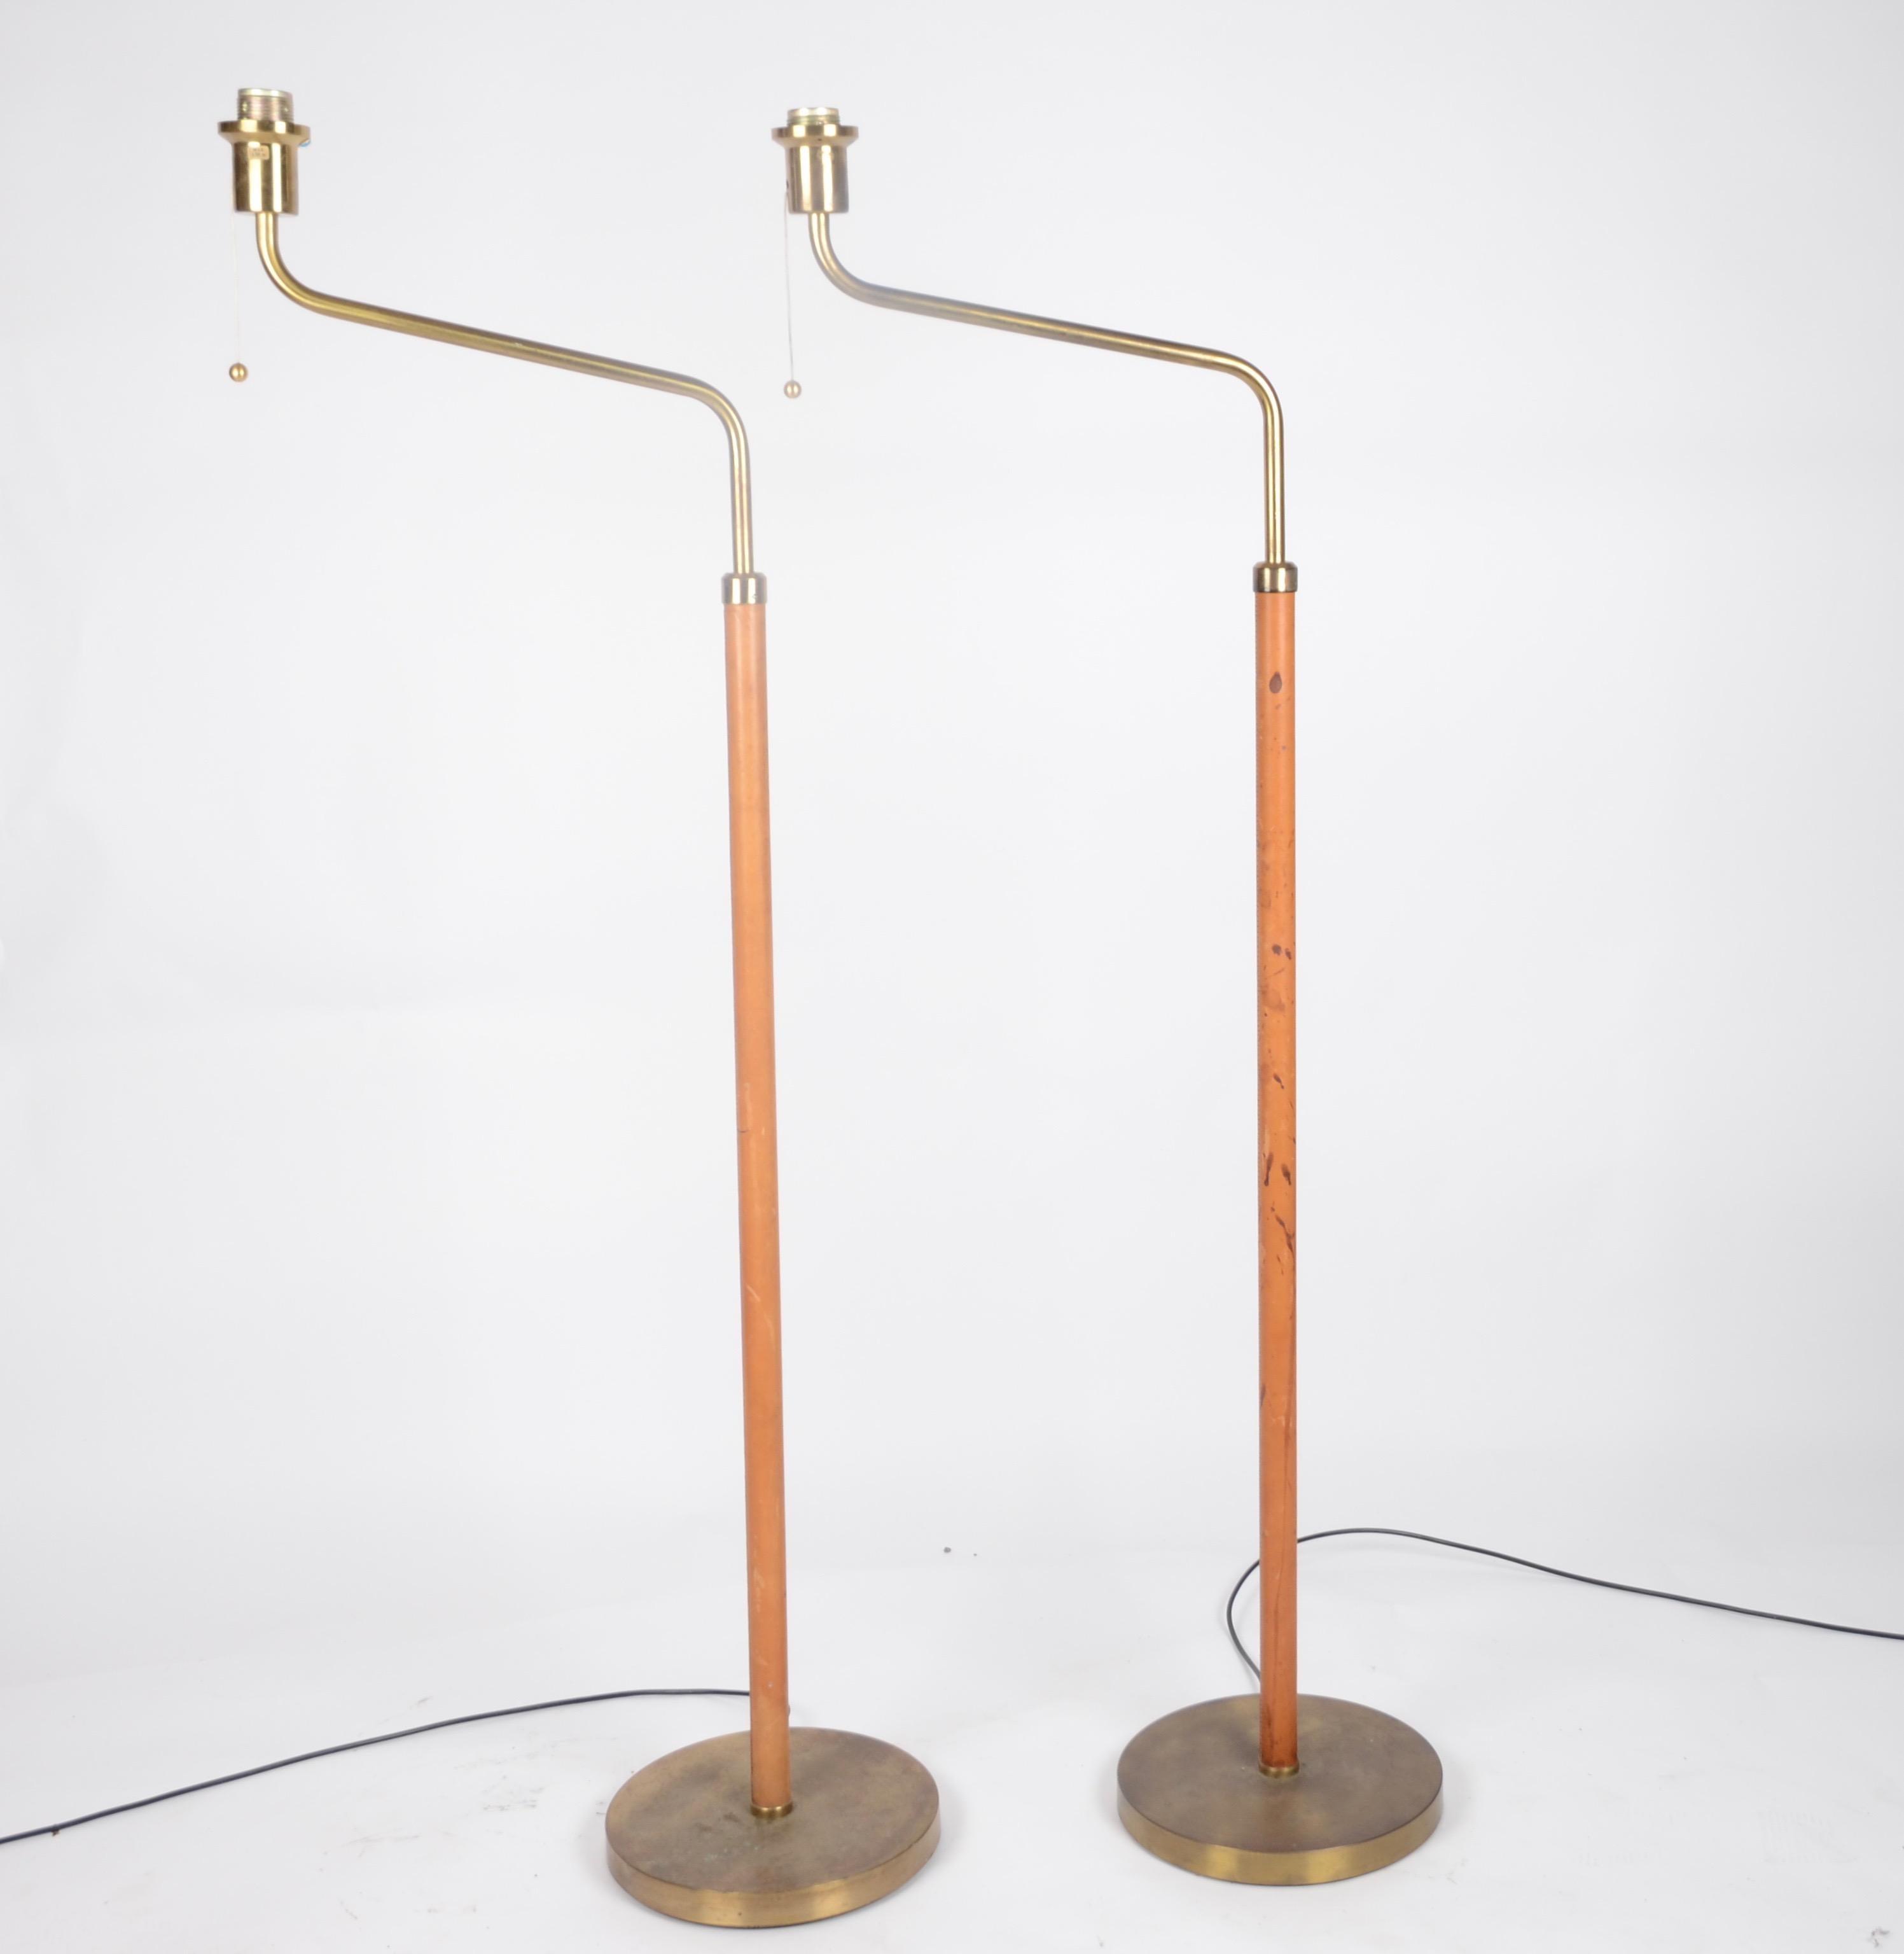 Scandinavian Modern Bertil Brisborg, Floor Lamps, Designed for NK, Sweden, 1940s-1950s